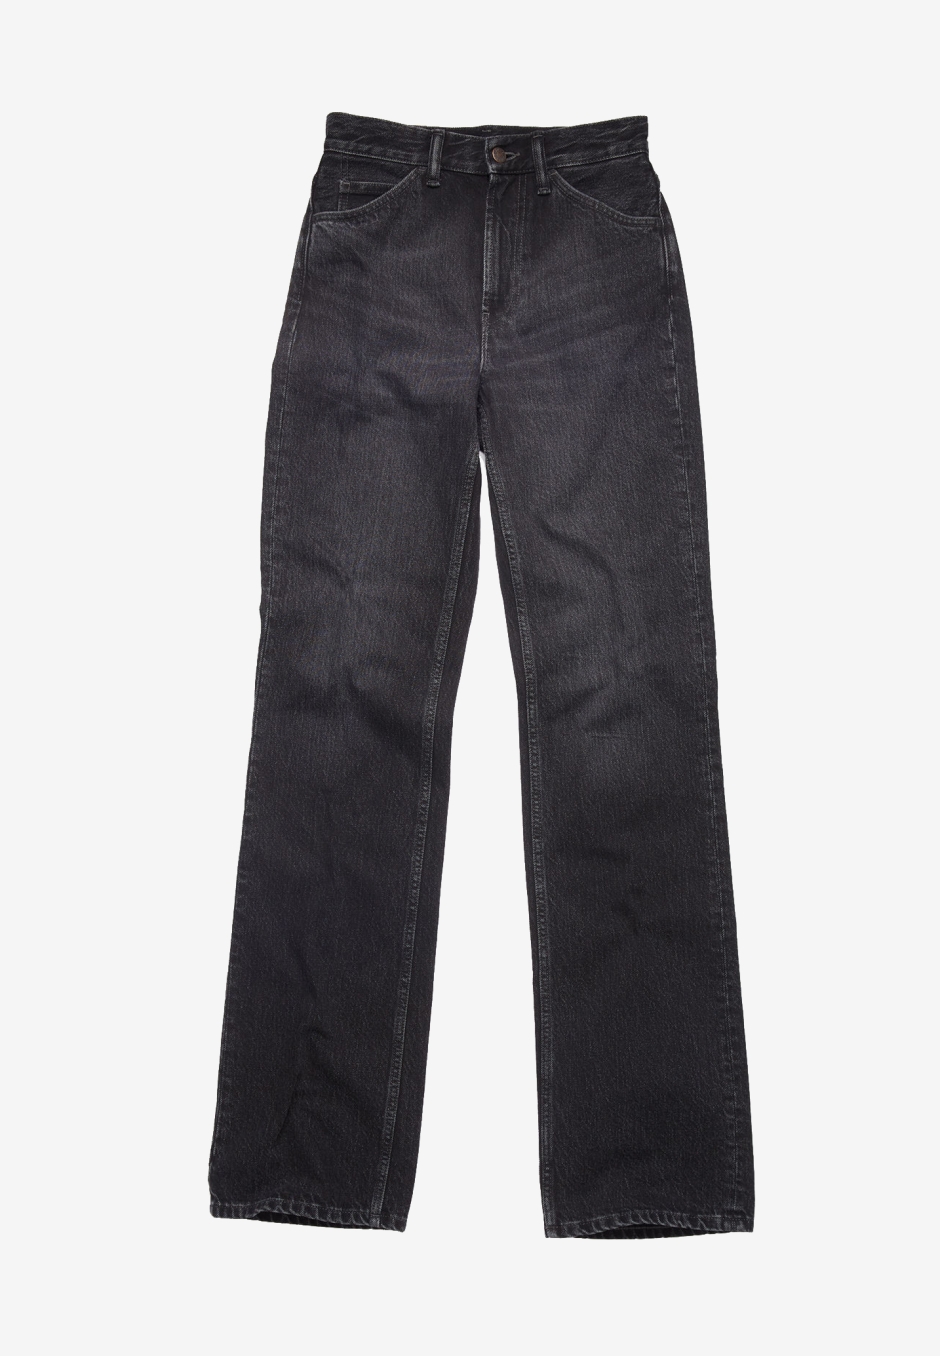 Acne Studios Regular Fit Jeans 1977 Vintage Black